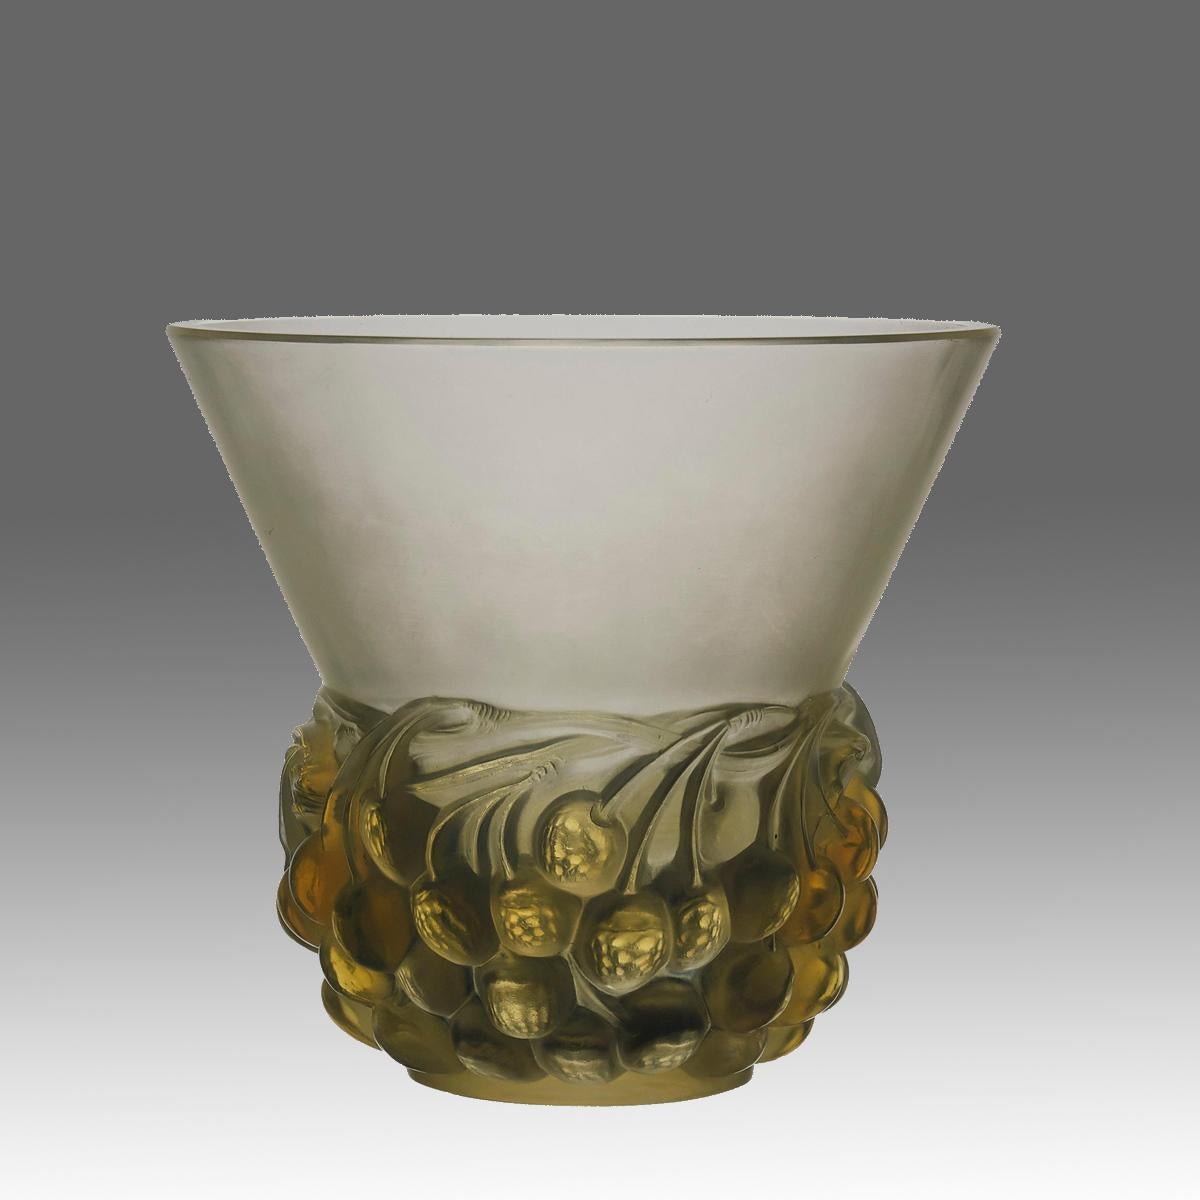 Un joli vase en verre Art déco de René Lalique, décoré de baies fruitées en relief sur toute la circonférence du vase, présentant un excellent mélange de verre dépoli et opalescent avec de fins détails finis à la main, signé R&R ARTIQUE France.

